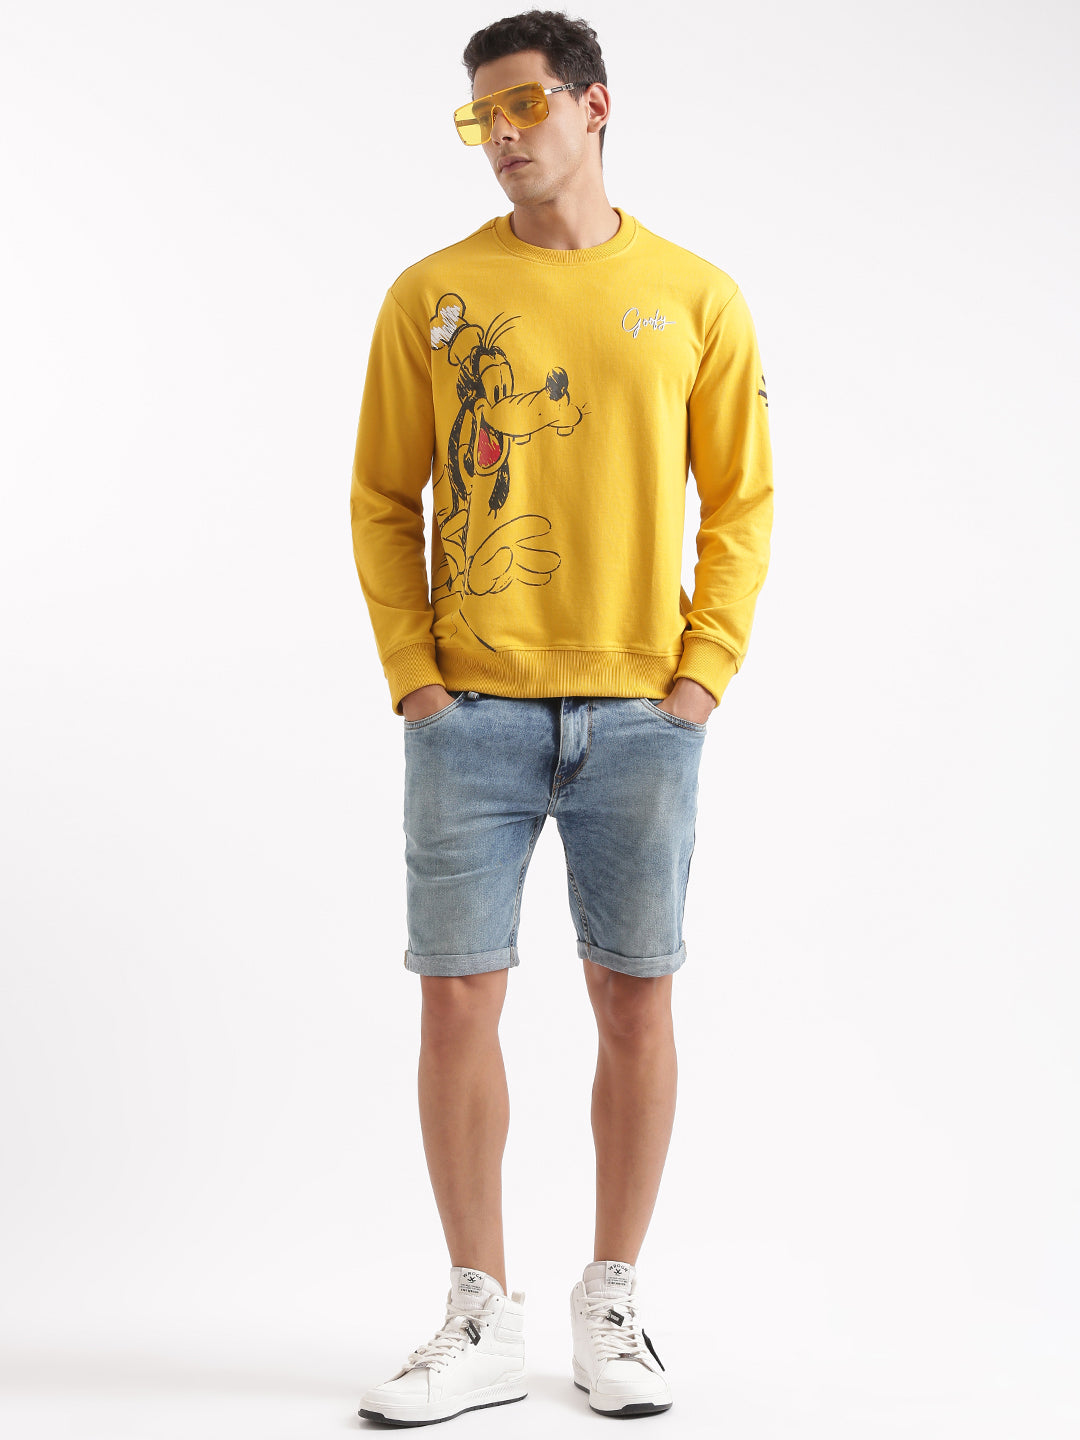 Goofy's Sunny Yellow Sweatshirt